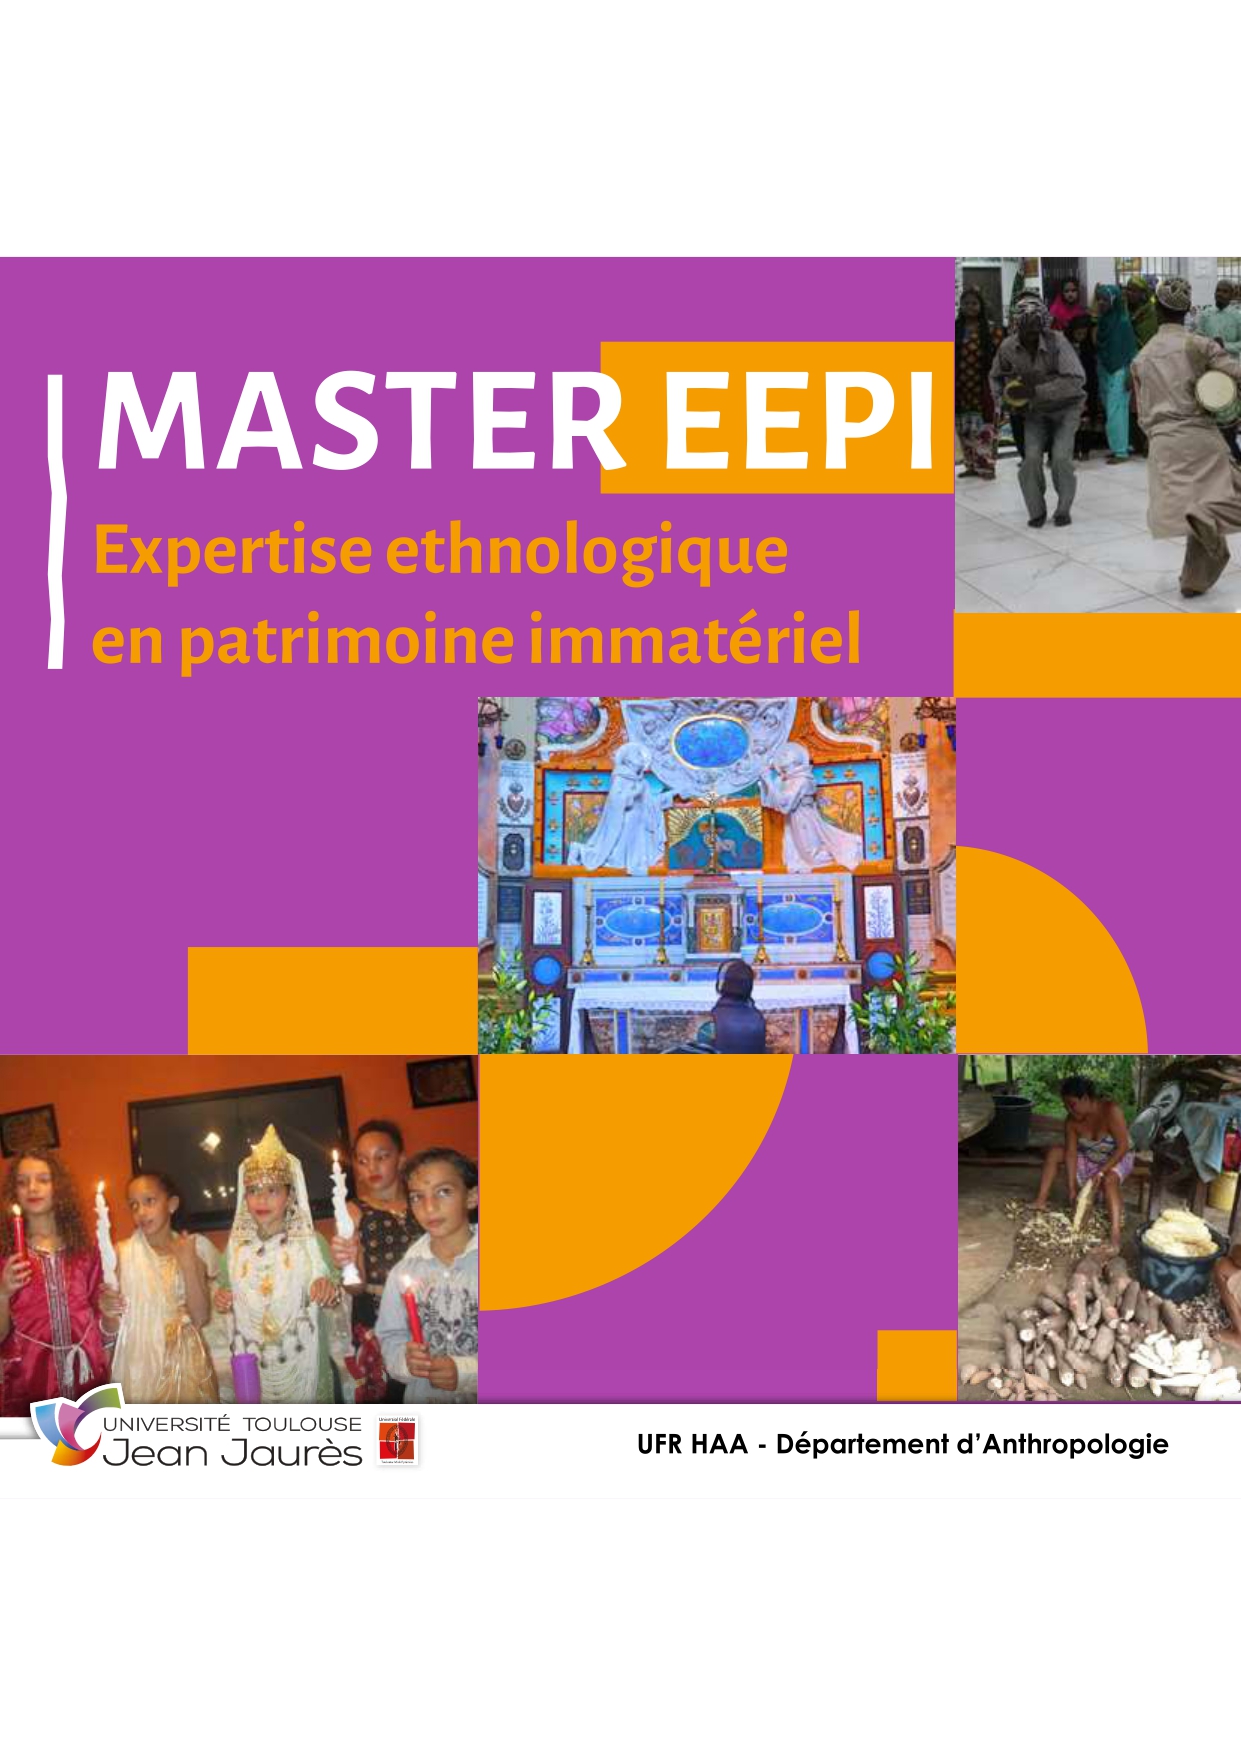 Page de présentation master EEPI